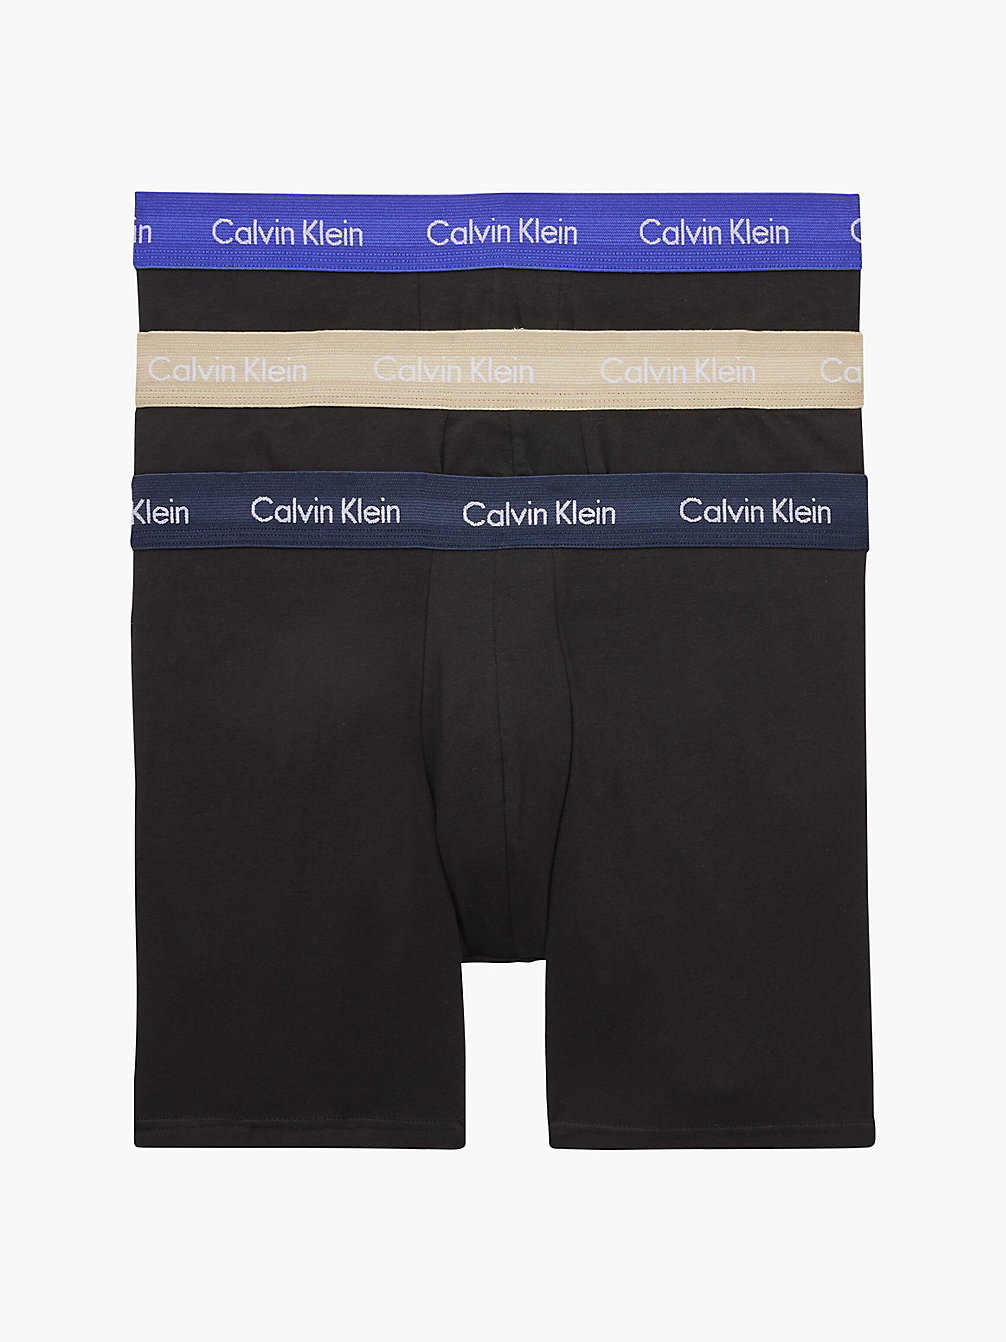 B-SHORELINE/ CLEM/ TRAVERTINE WB 3 Pack Boxer Briefs - Cotton Stretch undefined men Calvin Klein